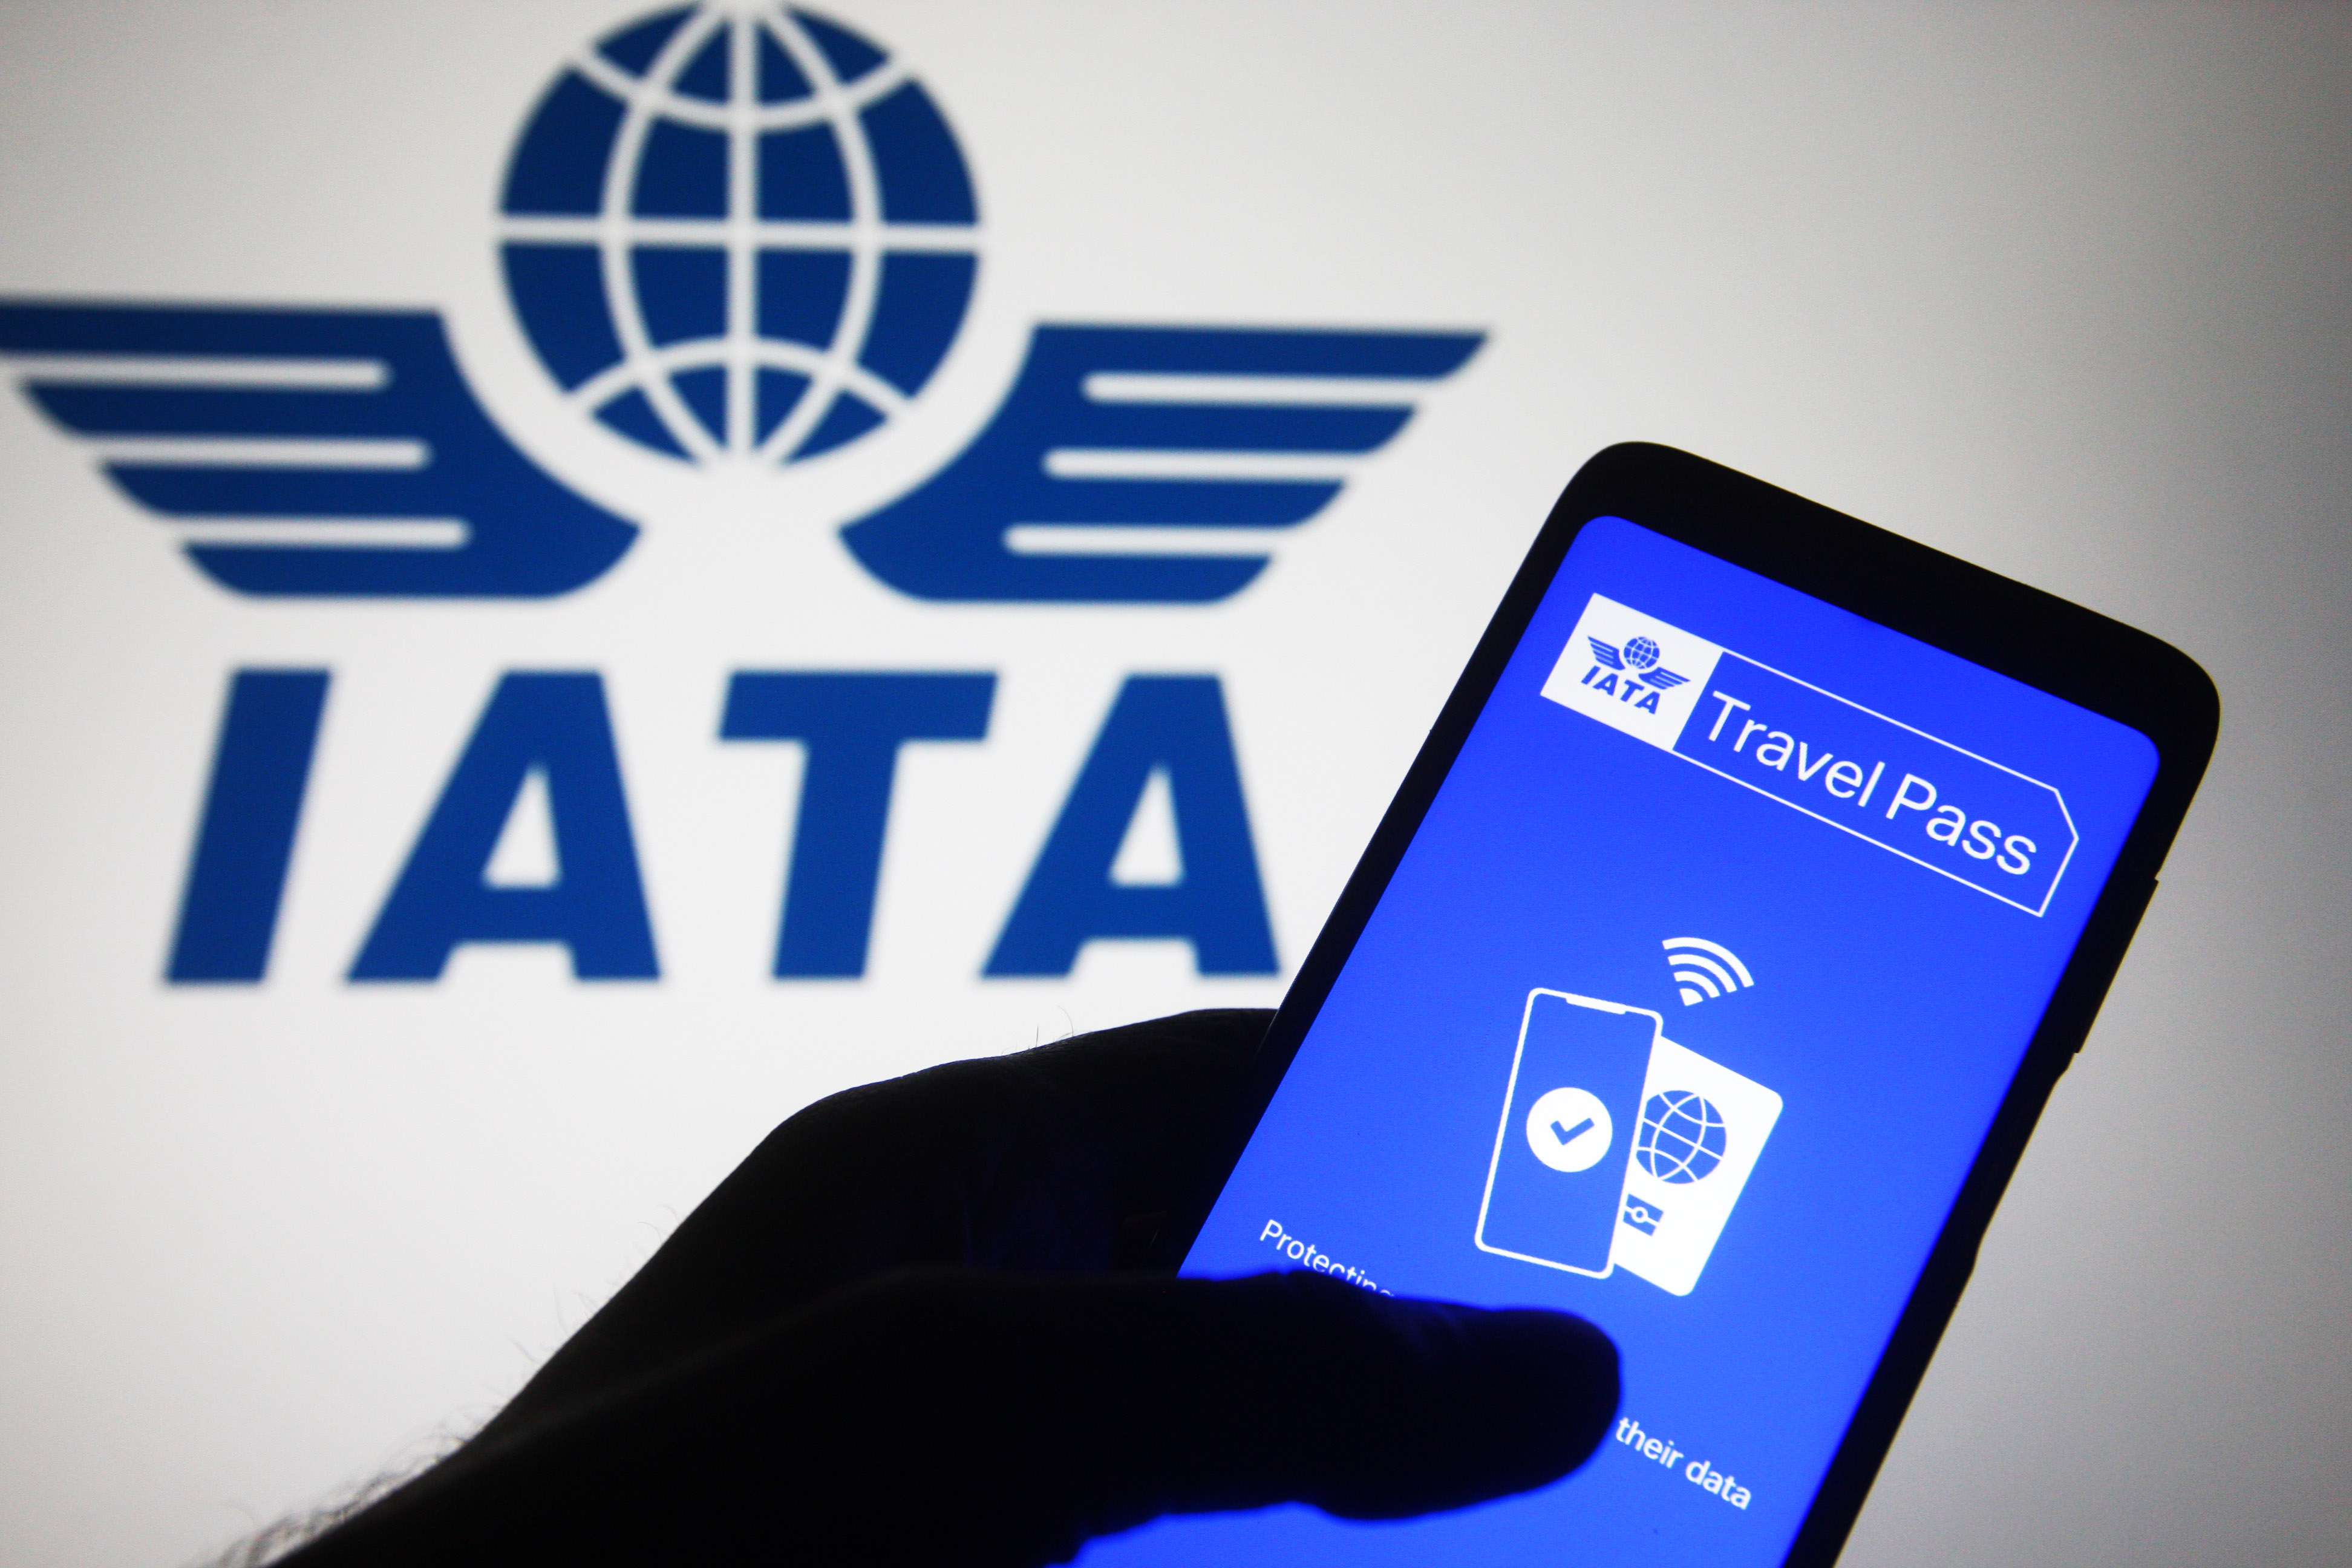 iata travel pass app not working